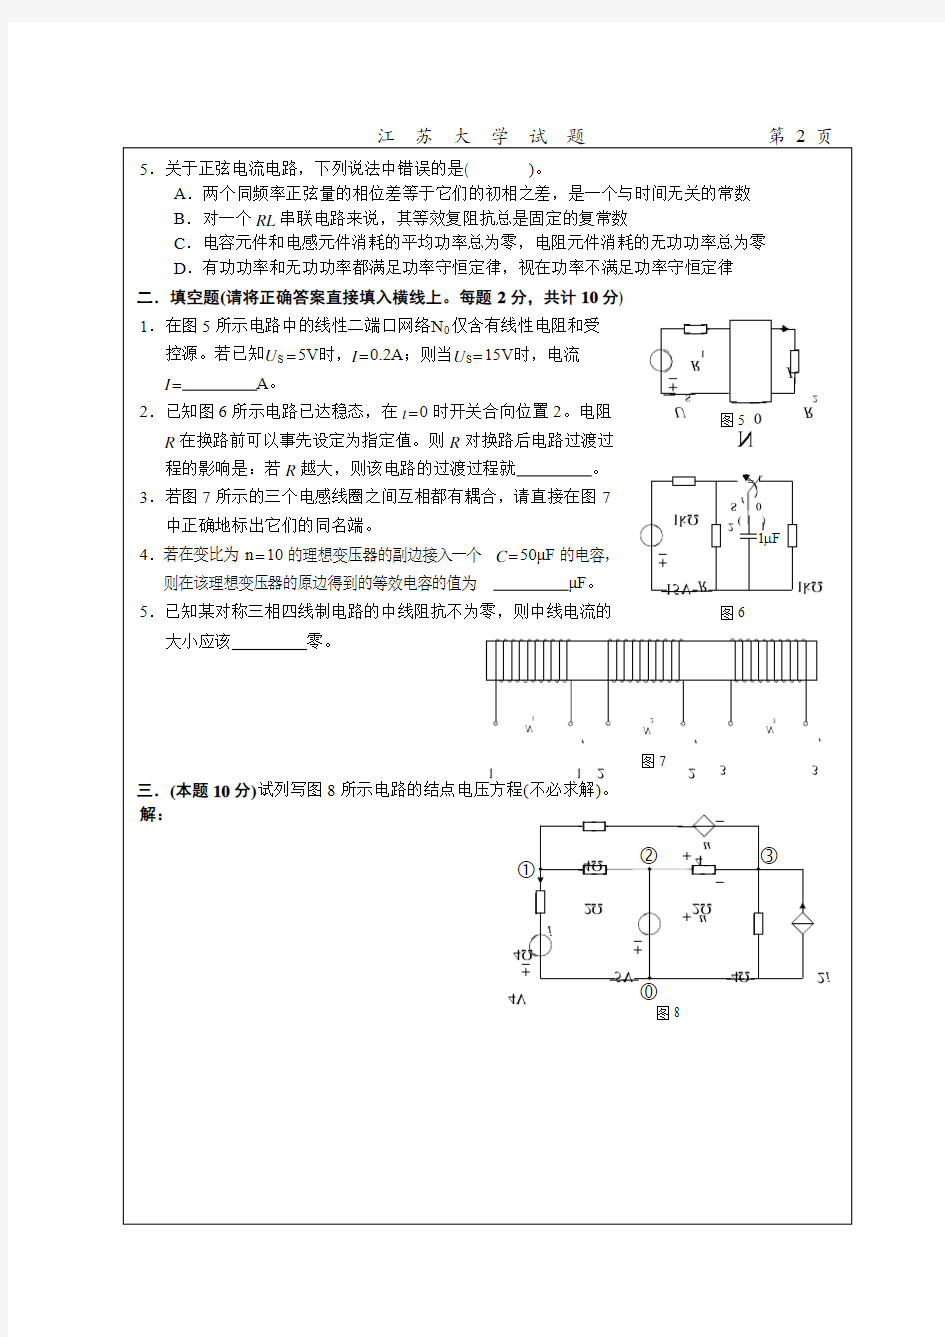 江苏大学-电路原理二-期末测试试卷-综合试卷(2)